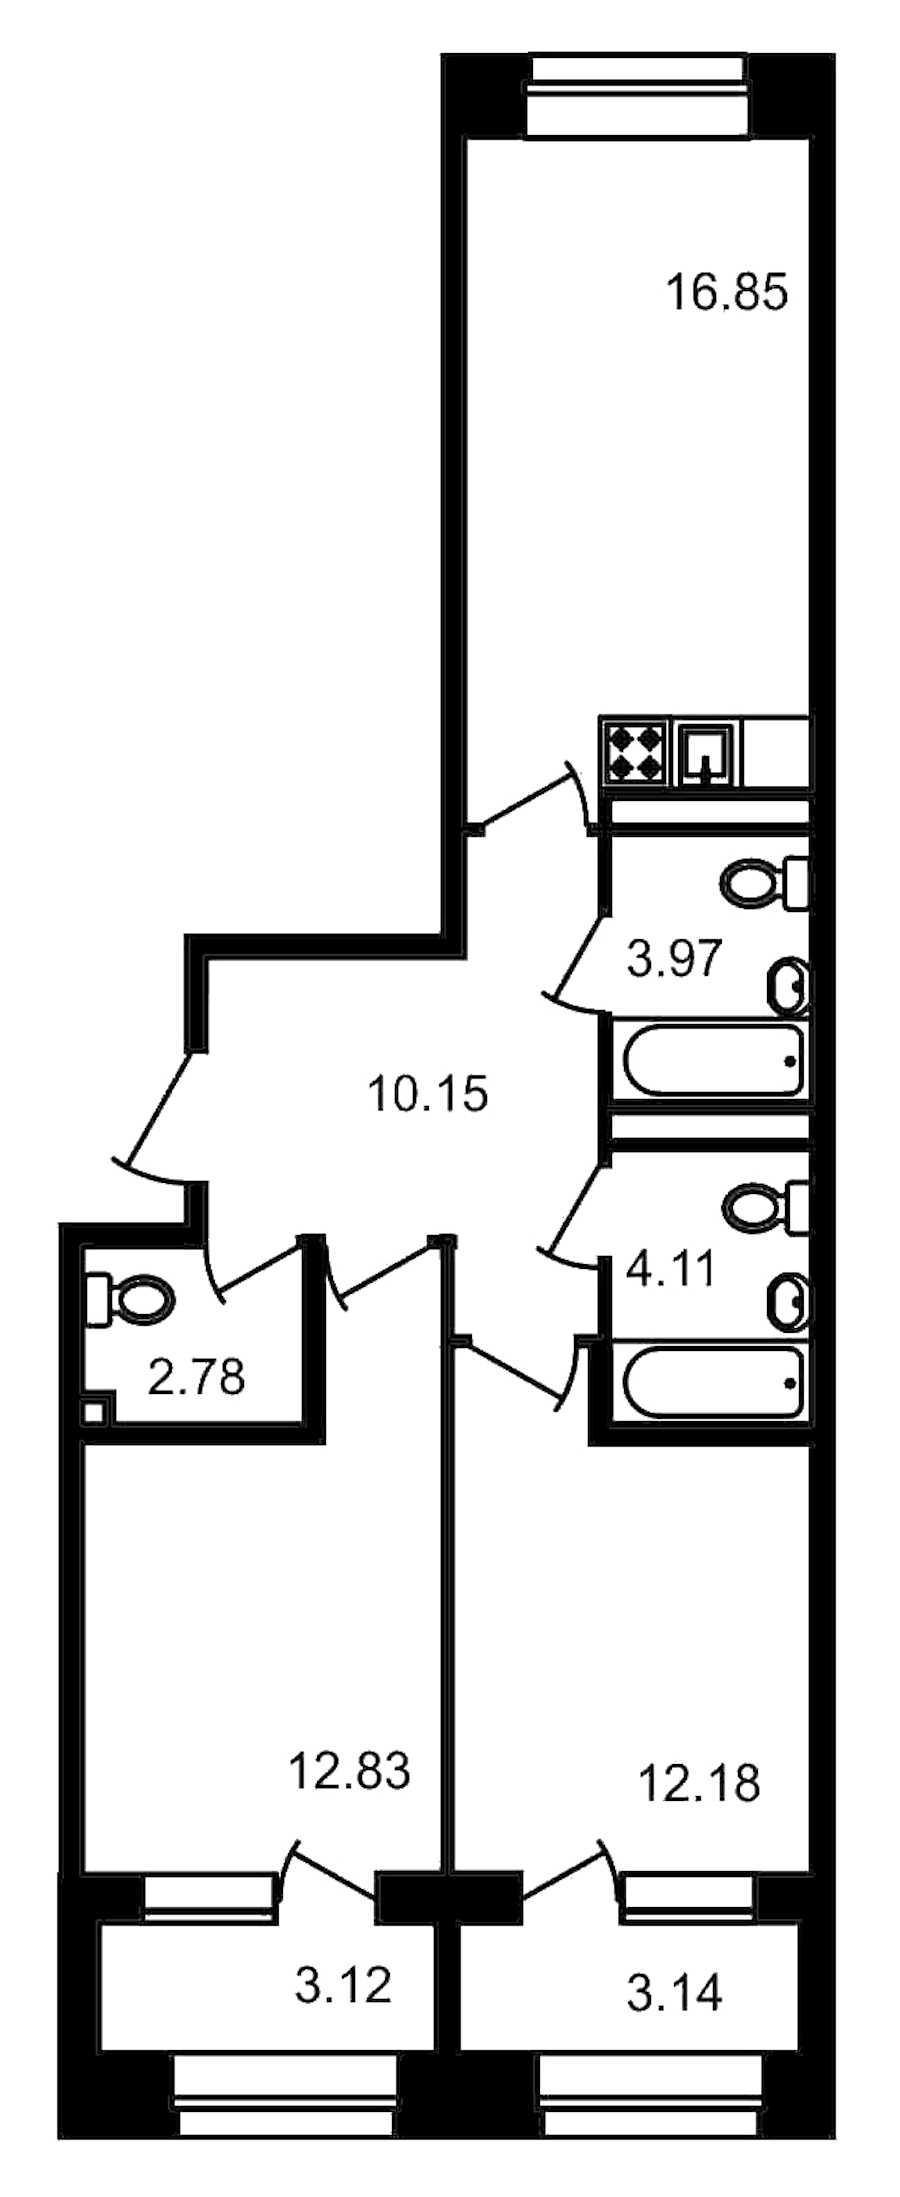 Двухкомнатная квартира в : площадь 69.13 м2 , этаж: 3 – купить в Санкт-Петербурге